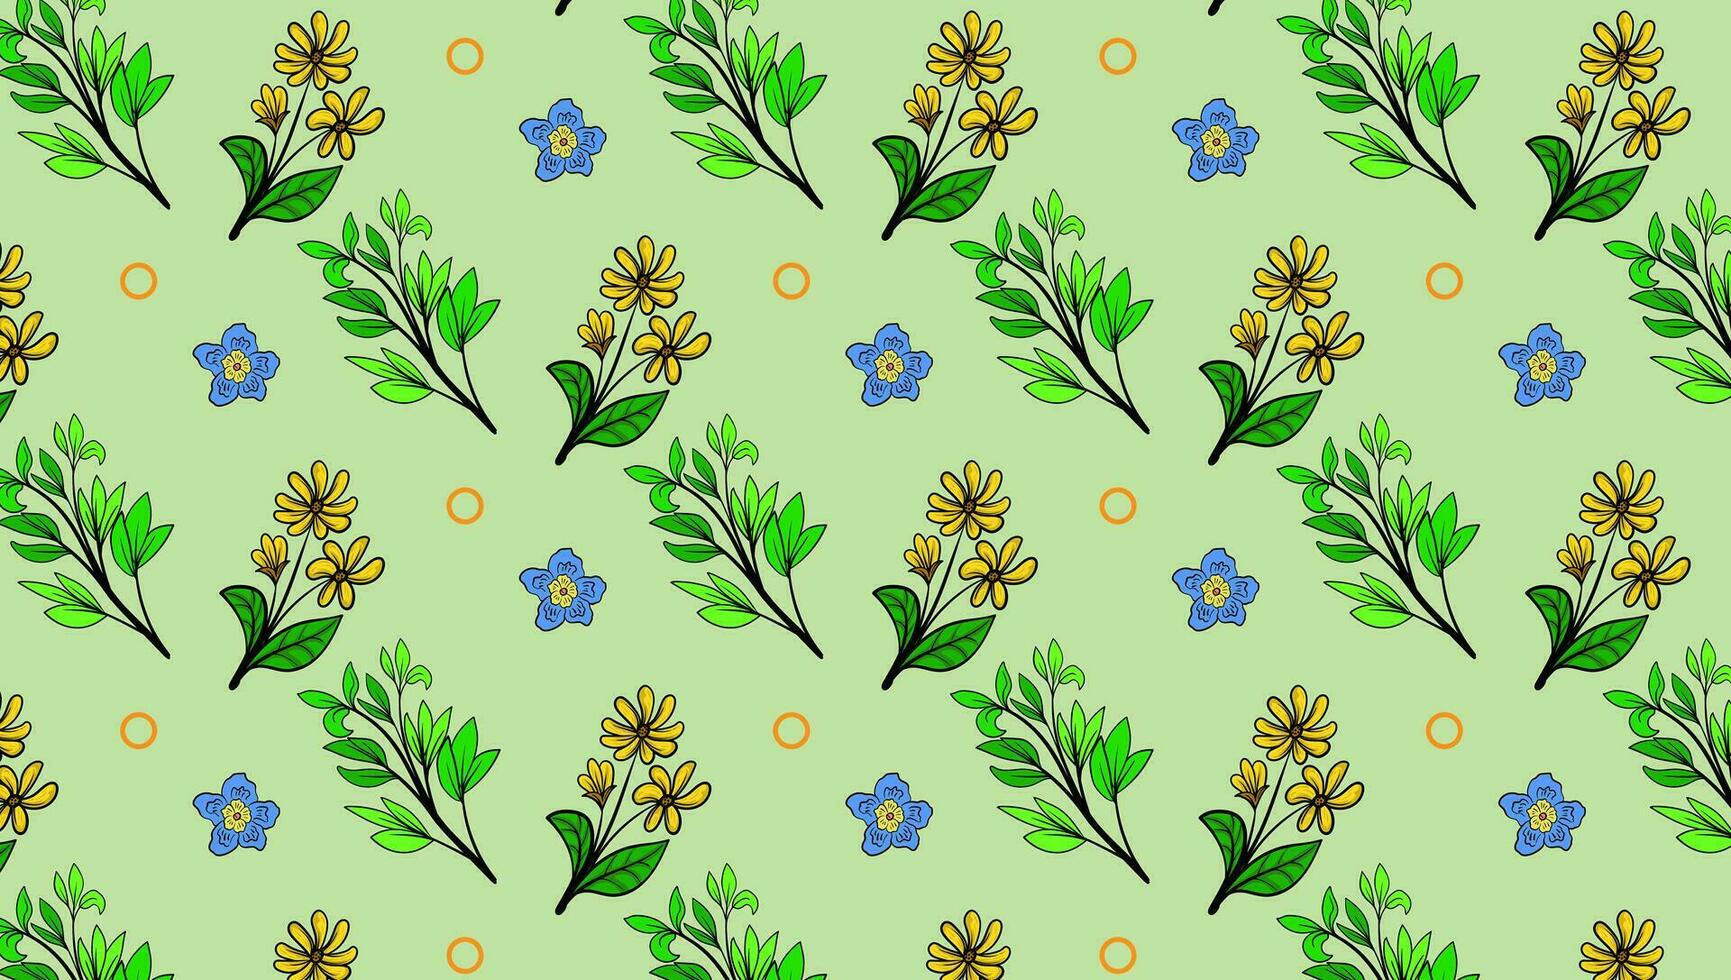 ditsy patroon bloemen naadloos textuur. abstract achtergrond met gemakkelijk klein blauw bloemen, bladeren. vrijheid stijl achtergronden. subtiel ornament. elegant herhaling ontwerp voor decor, kleding stof, afdrukken vector